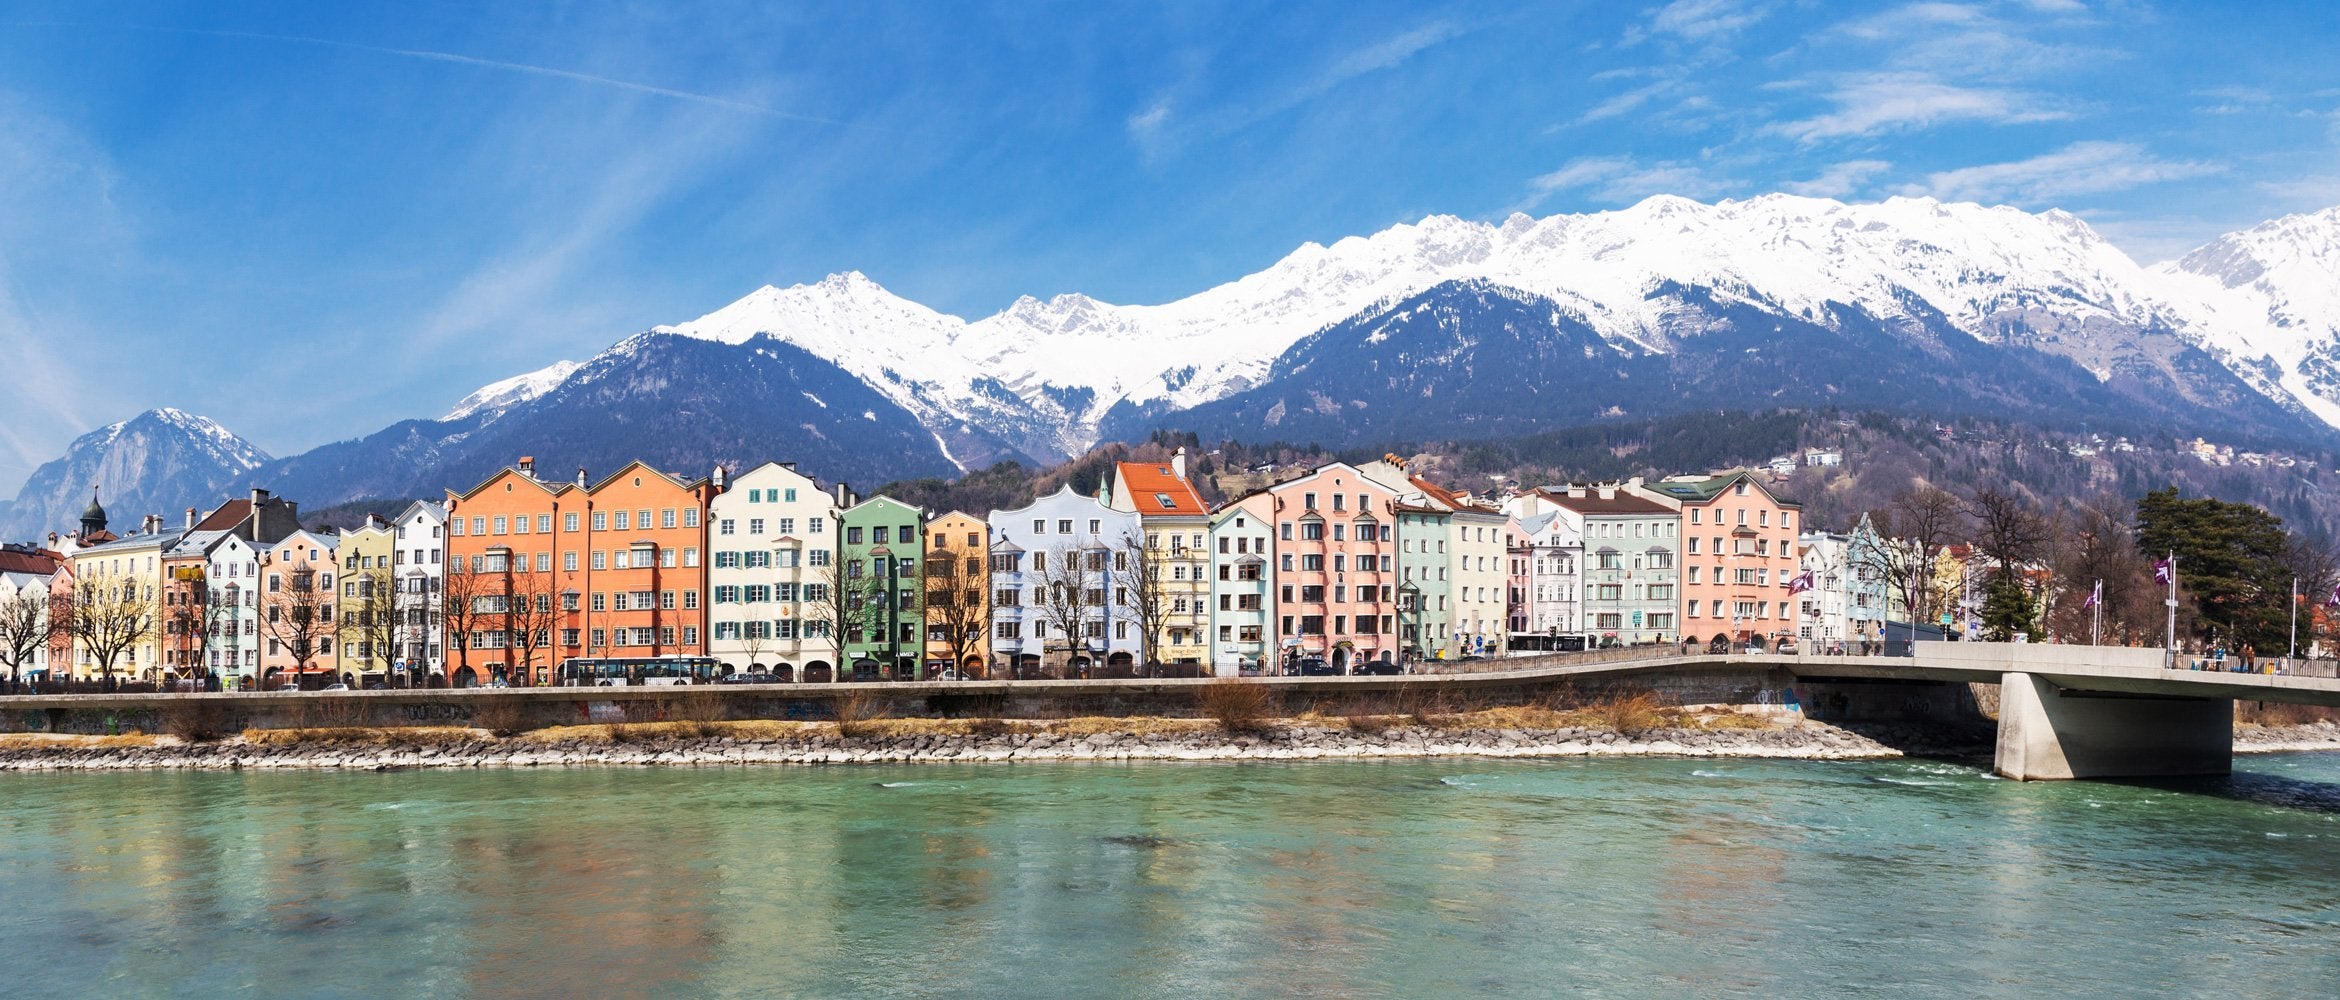 Field Guide: Innsbruck | WildBounds